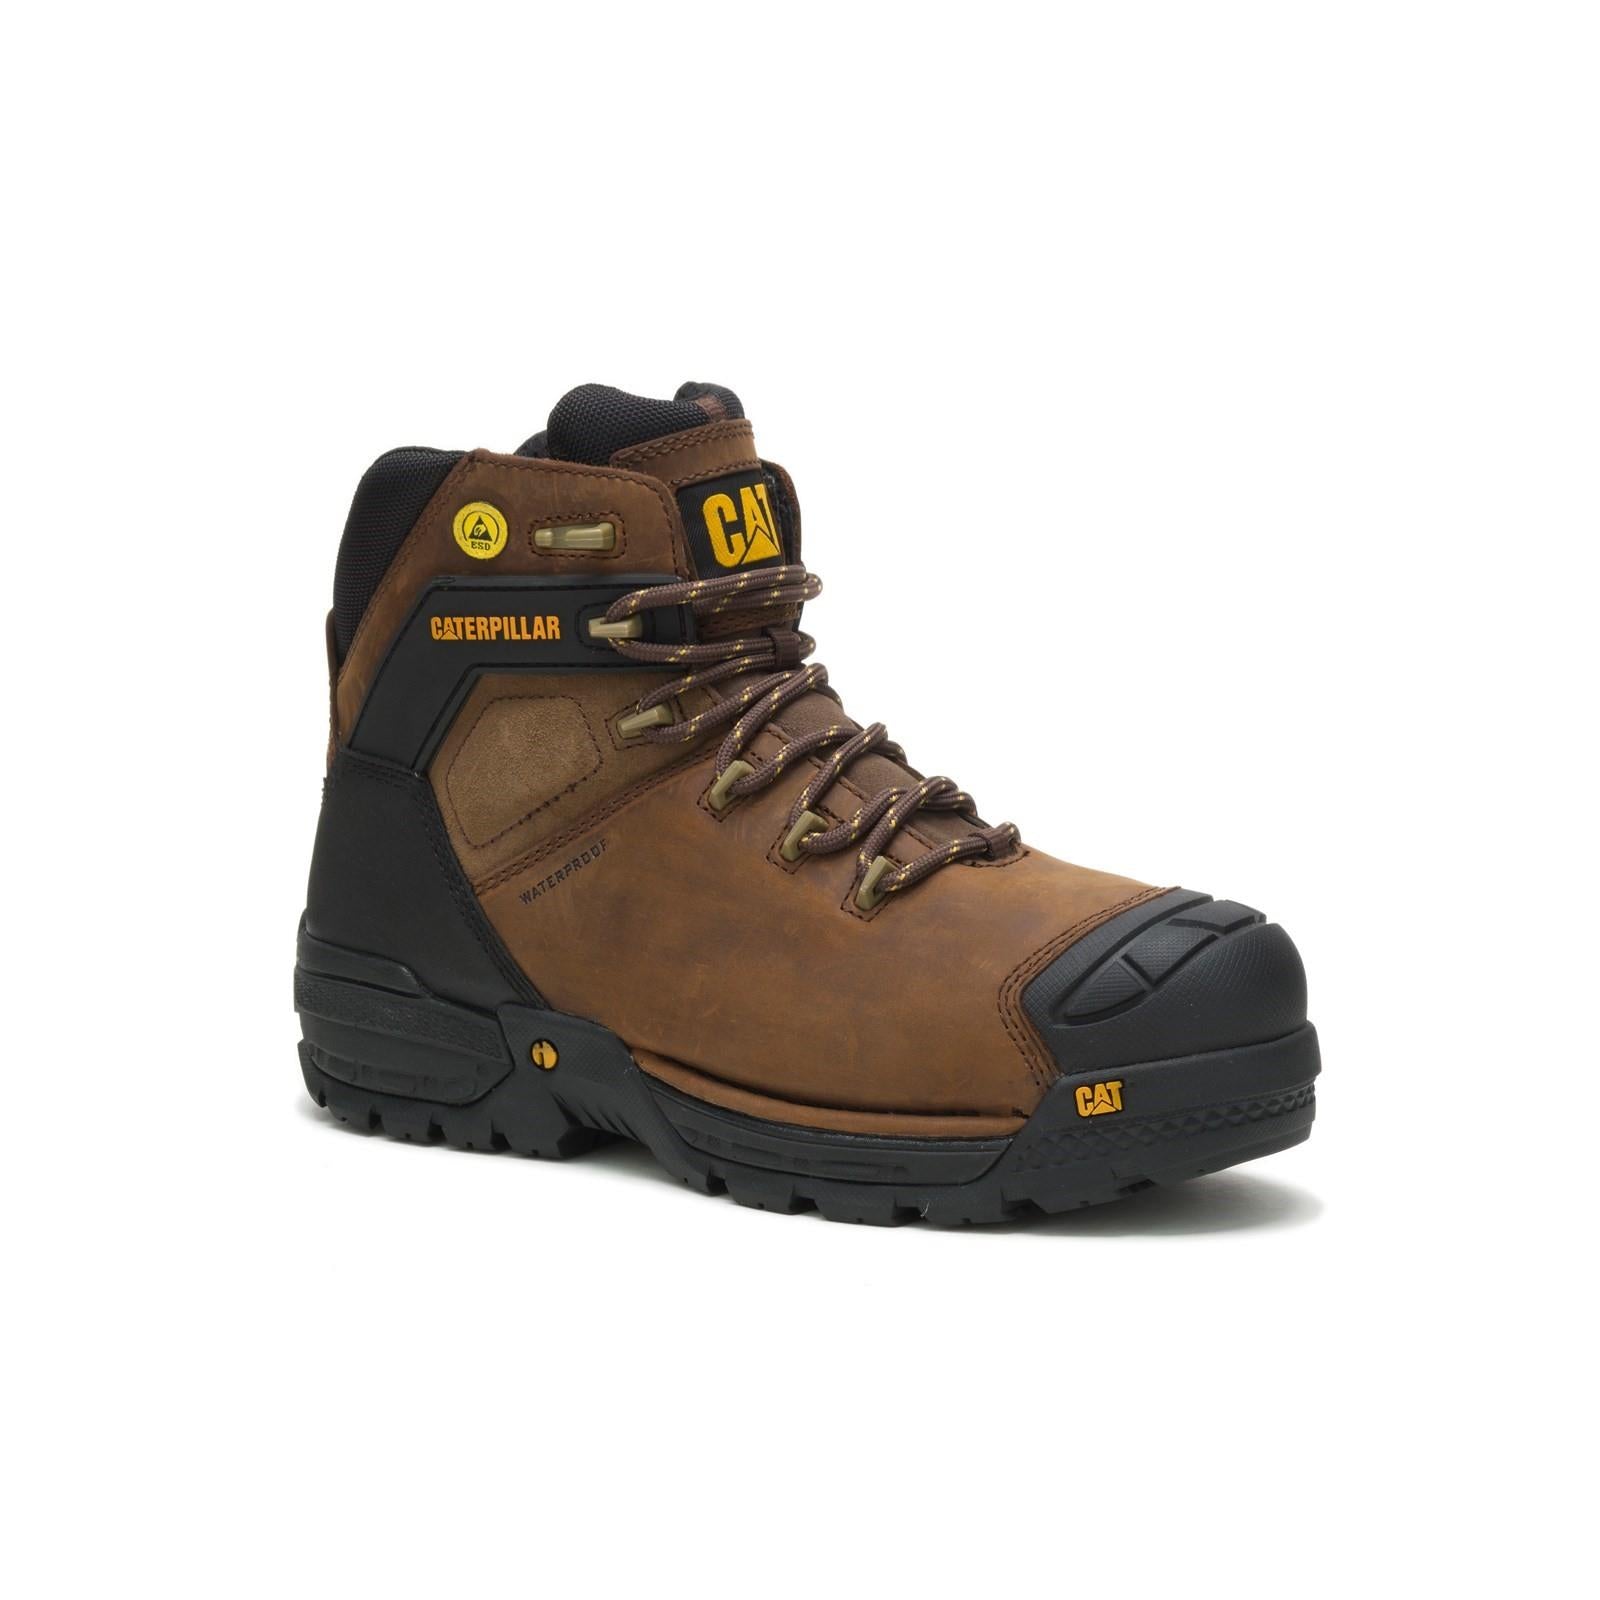 Caterpillar CAT Excavator S3 brown waterproof composite toe work safety boots